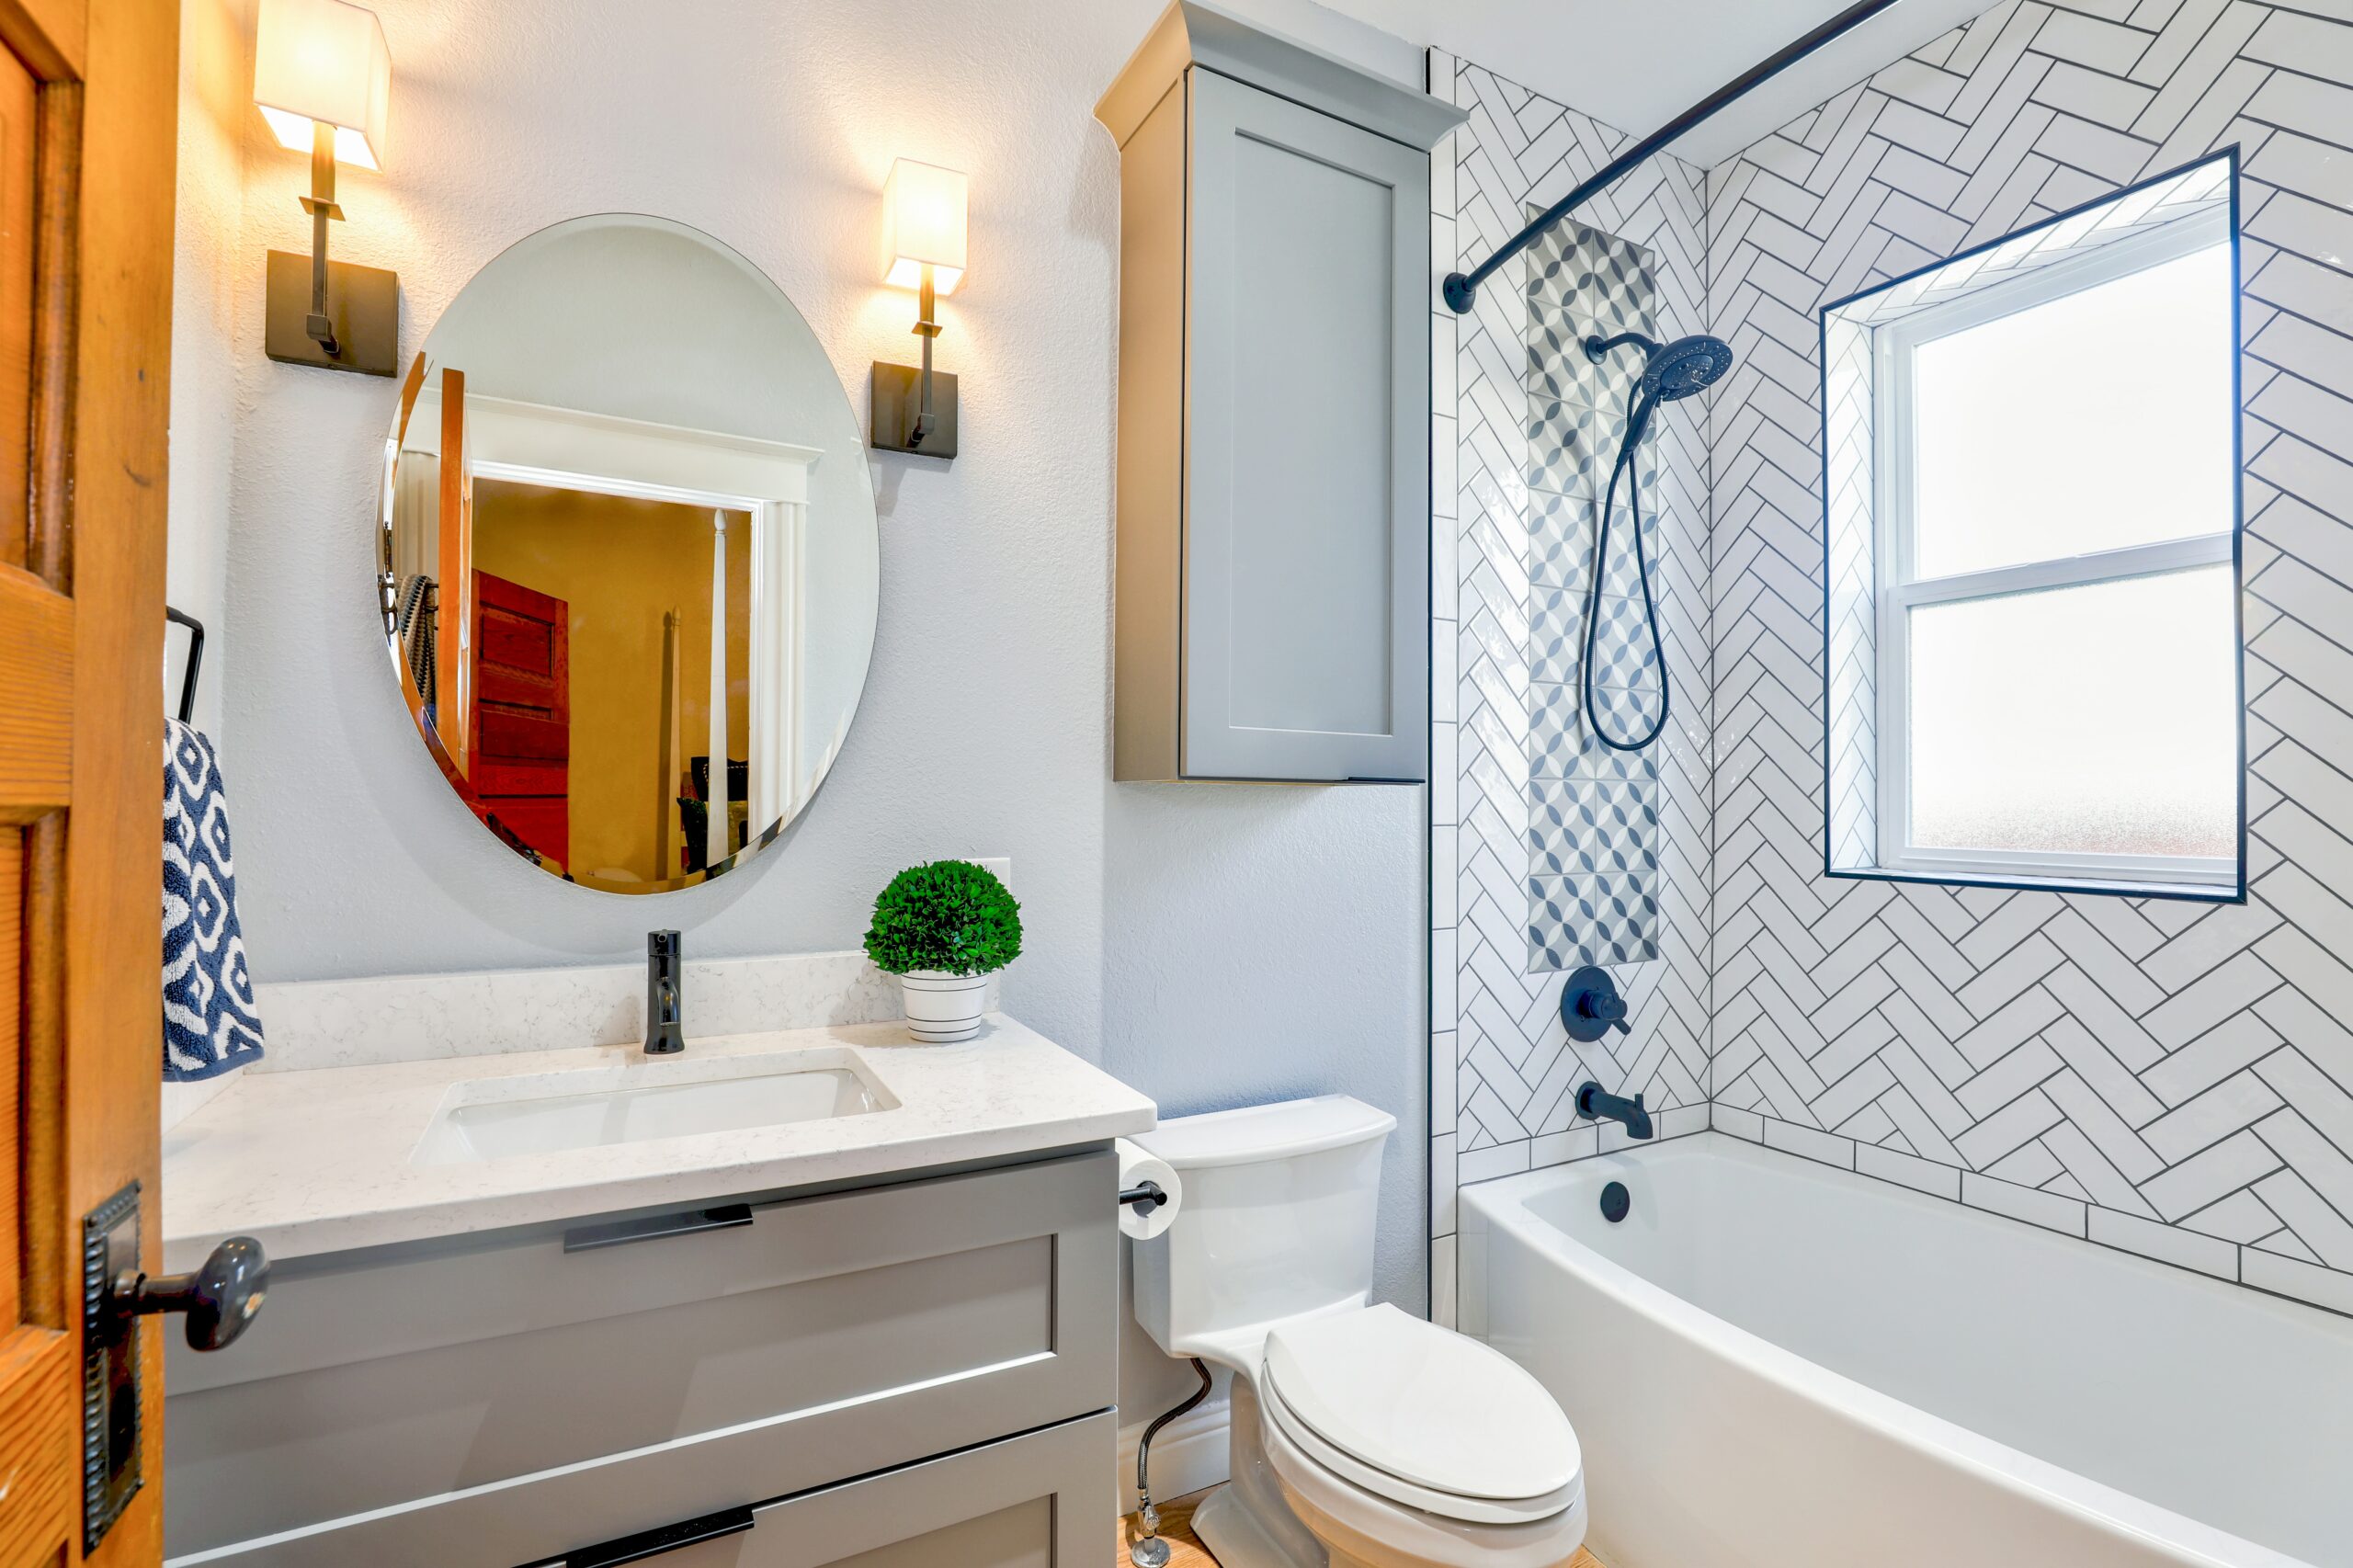 Bathroom remodeling benefits Chattanooga